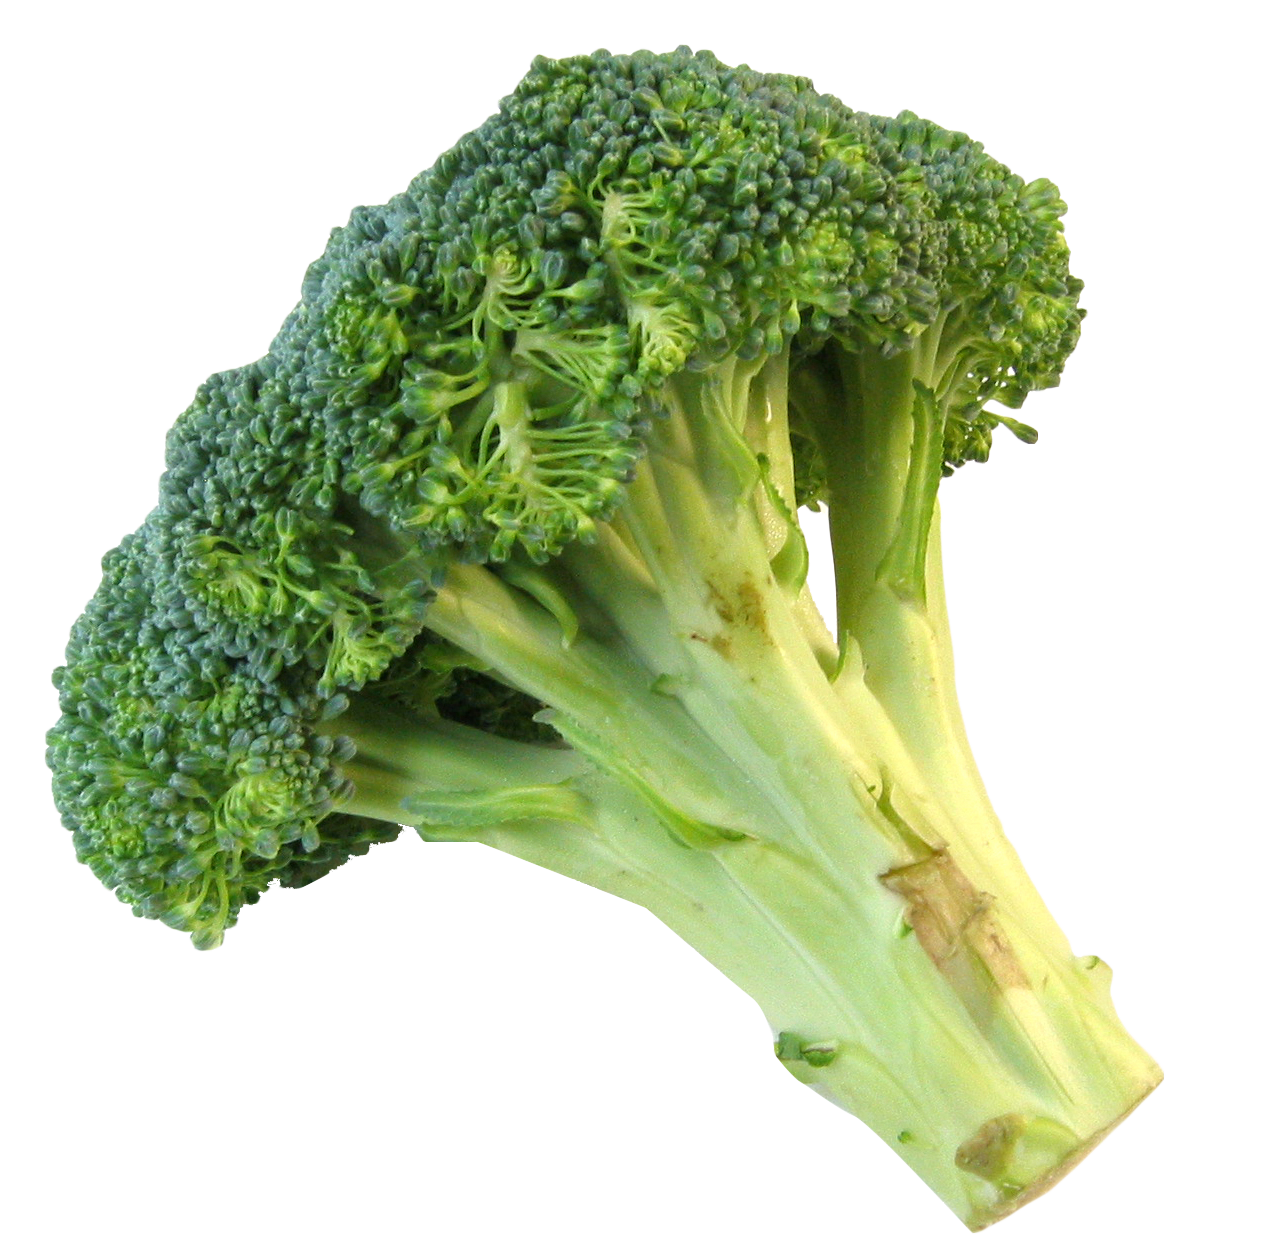 A Broccoli On A Black Background